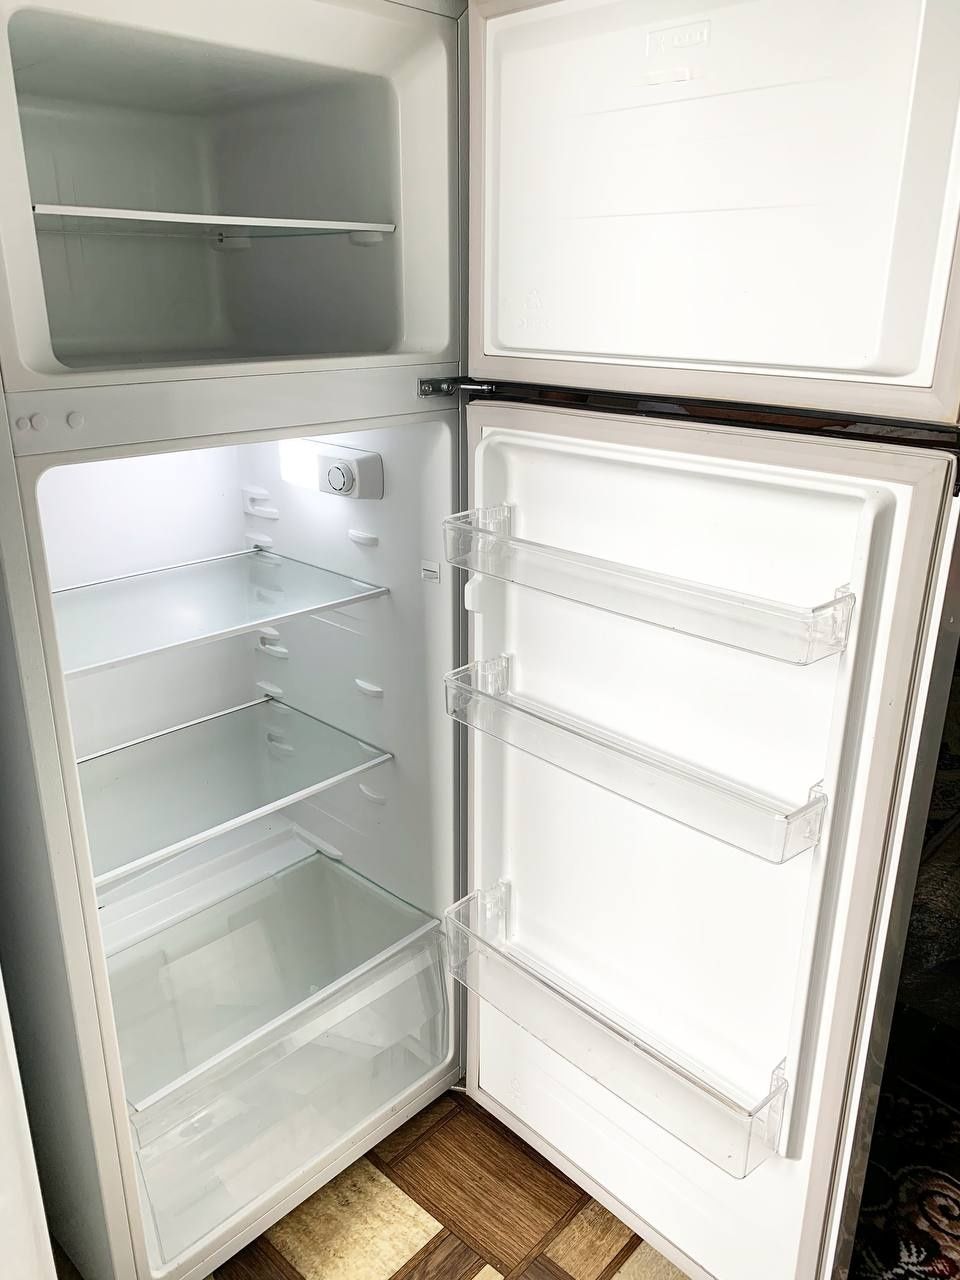 Холодильник продается продаются